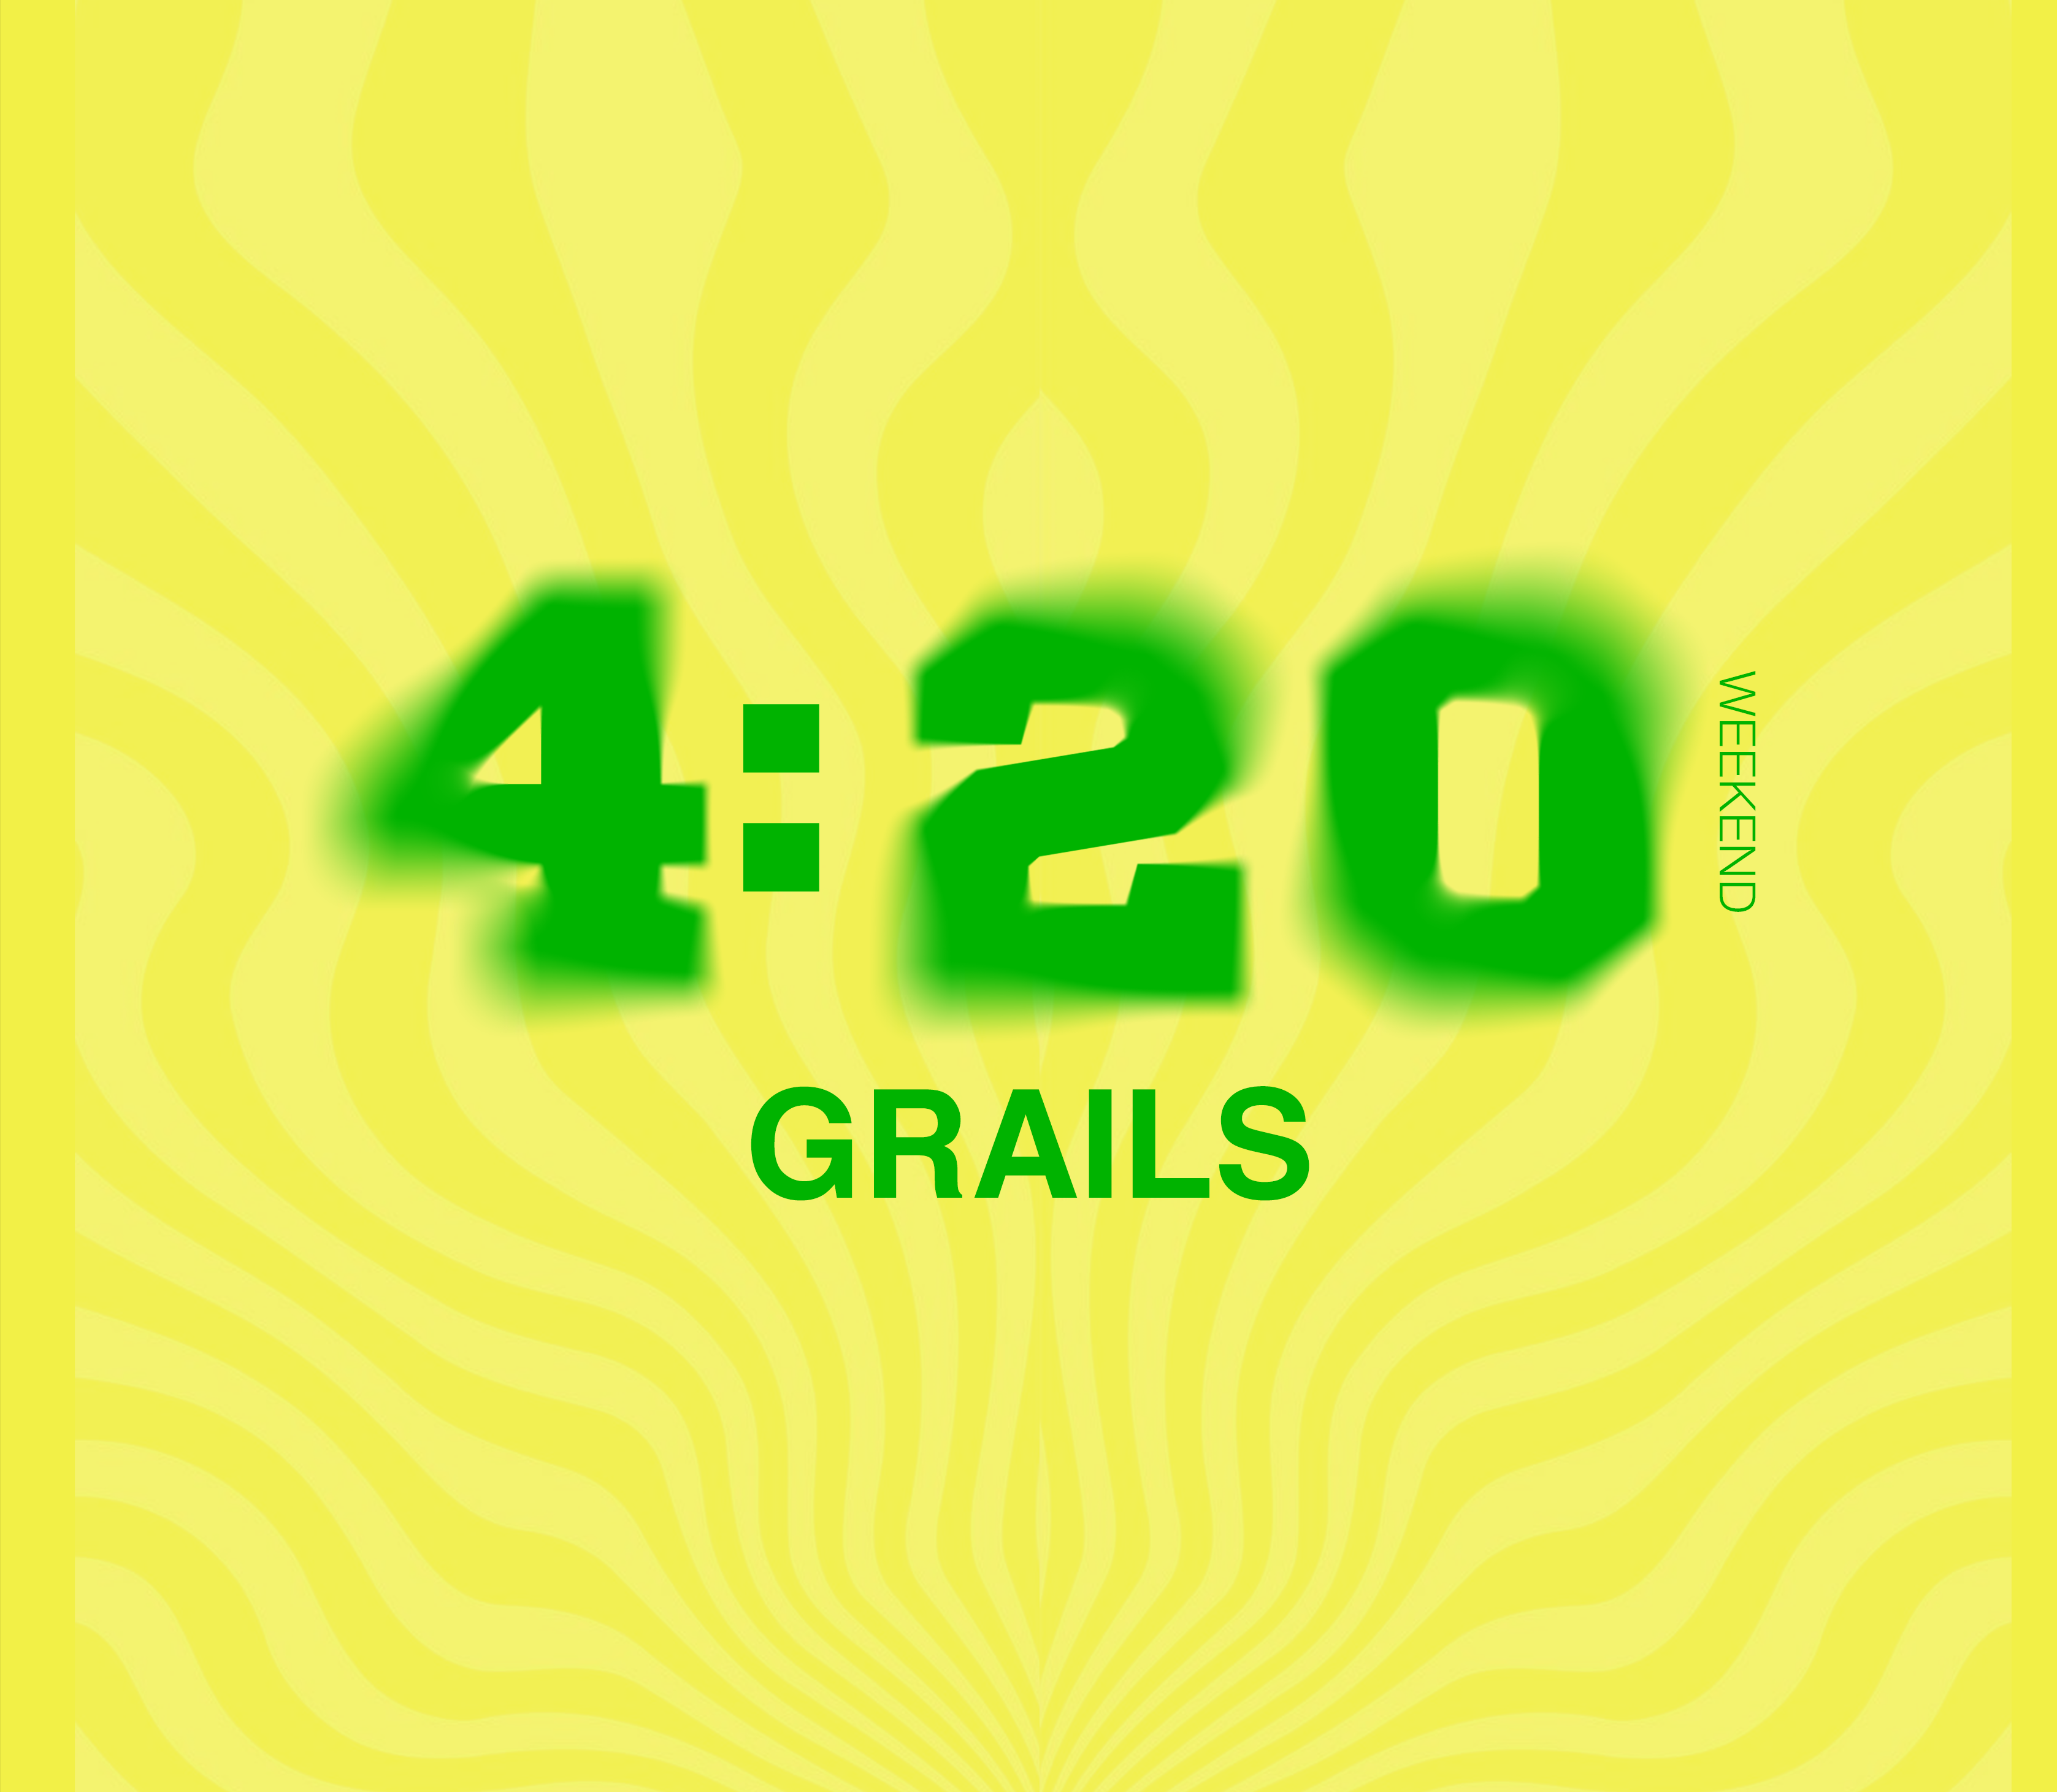 420 GRAILS